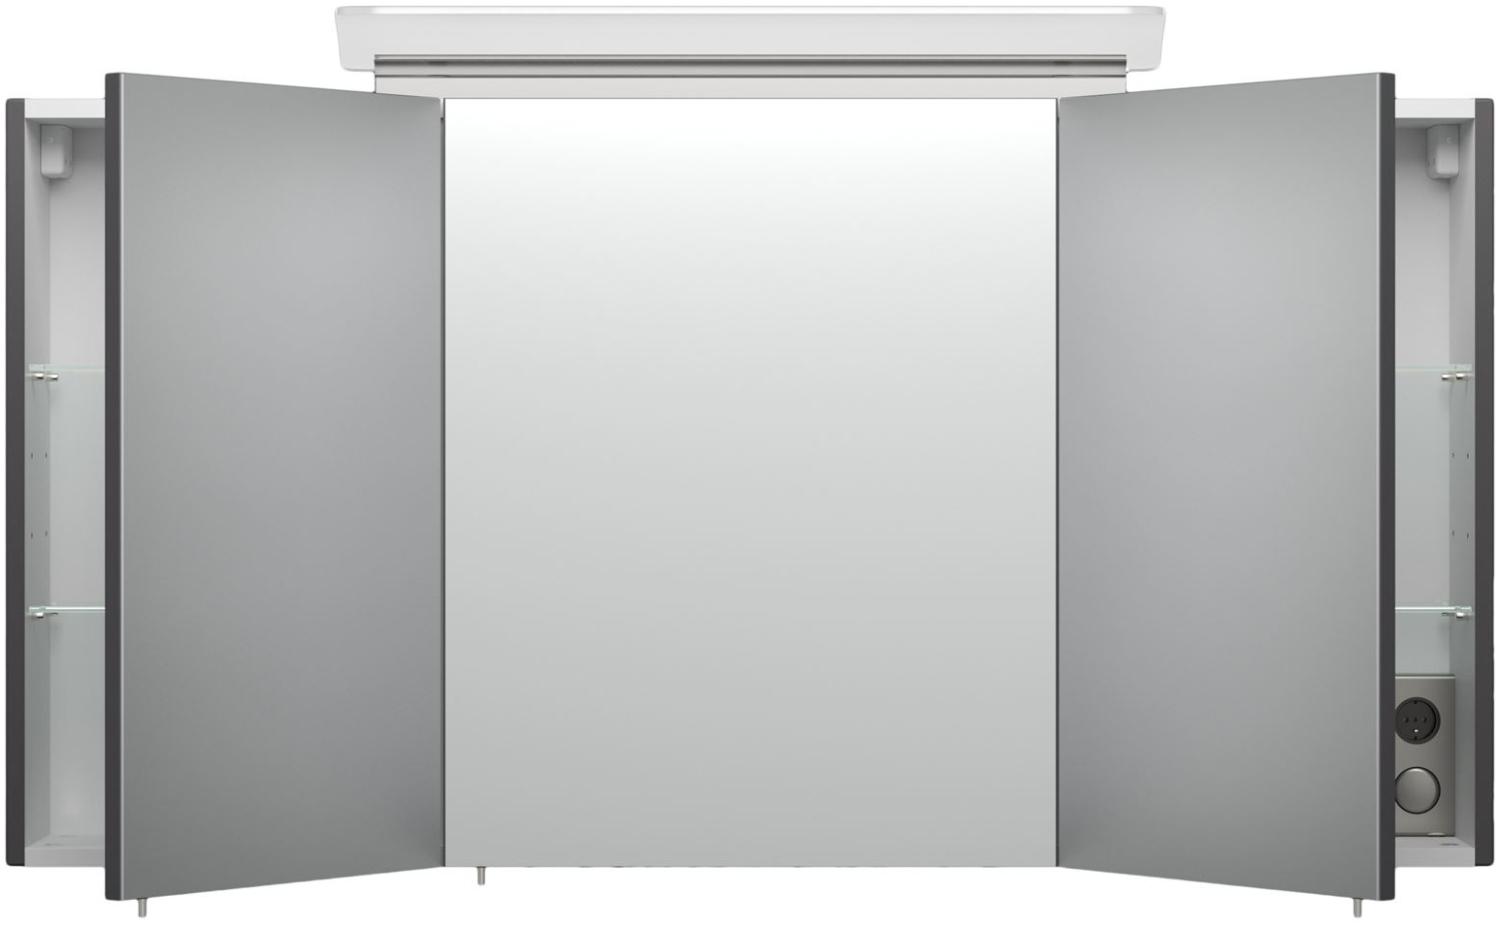 Posseik Design-LED-Spiegelschrank 120cm anthrazit seidenglanz Bild 1